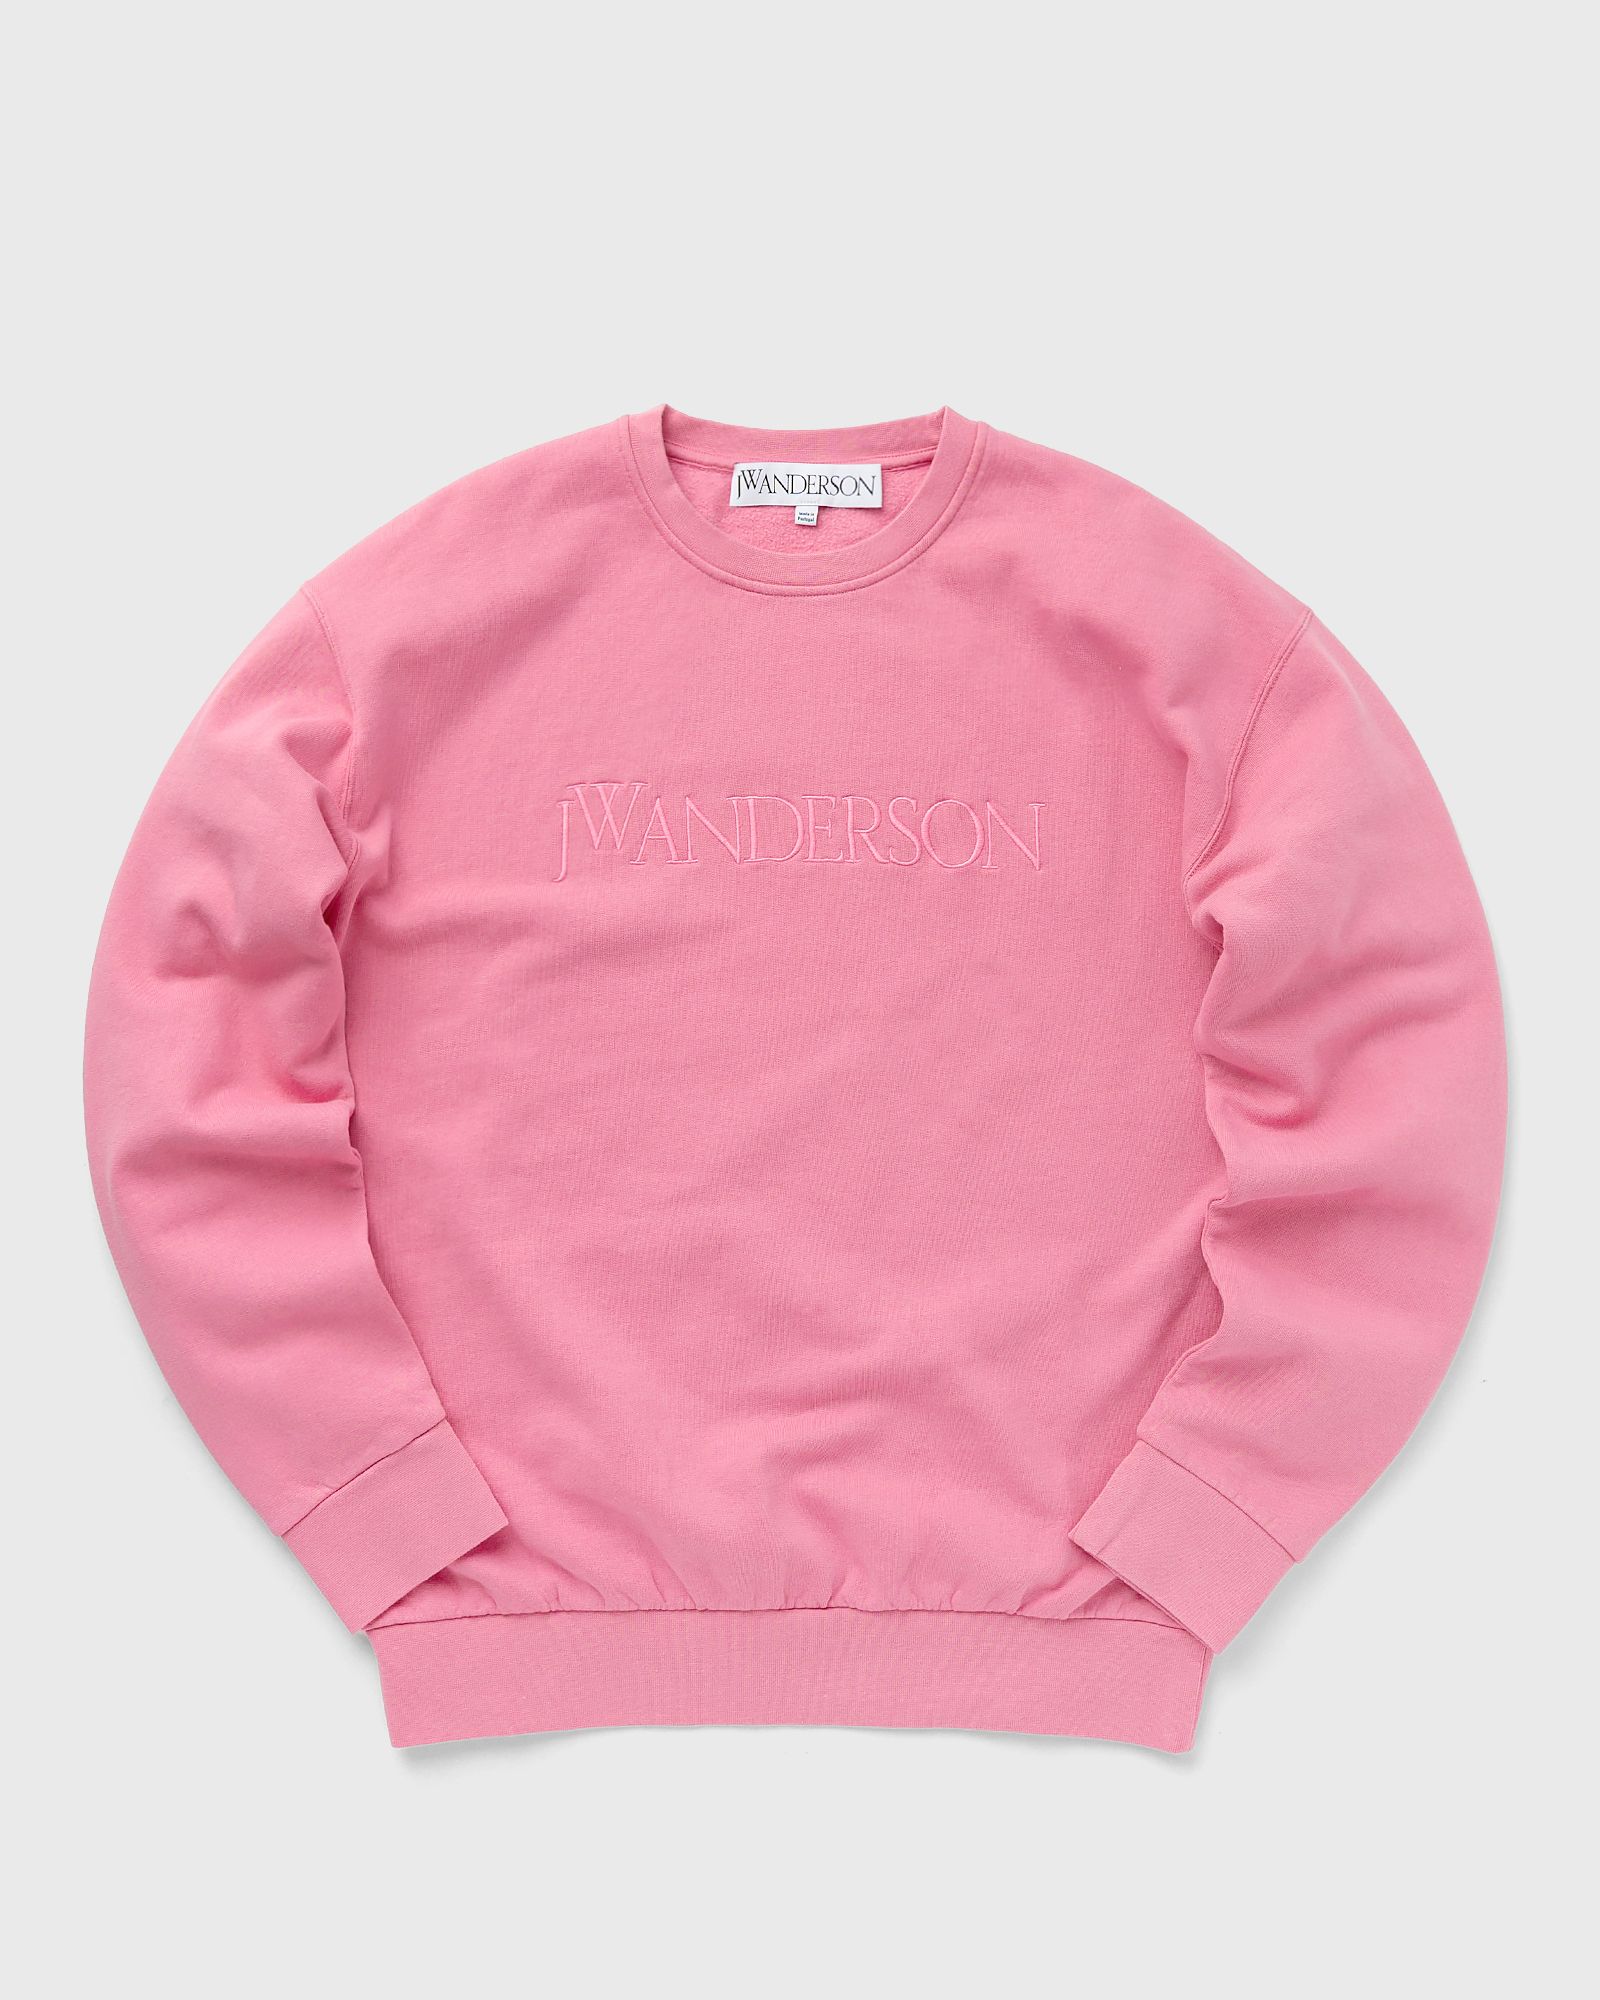 JW Anderson - logo embroidery sweatshirt men sweatshirts pink in größe:l